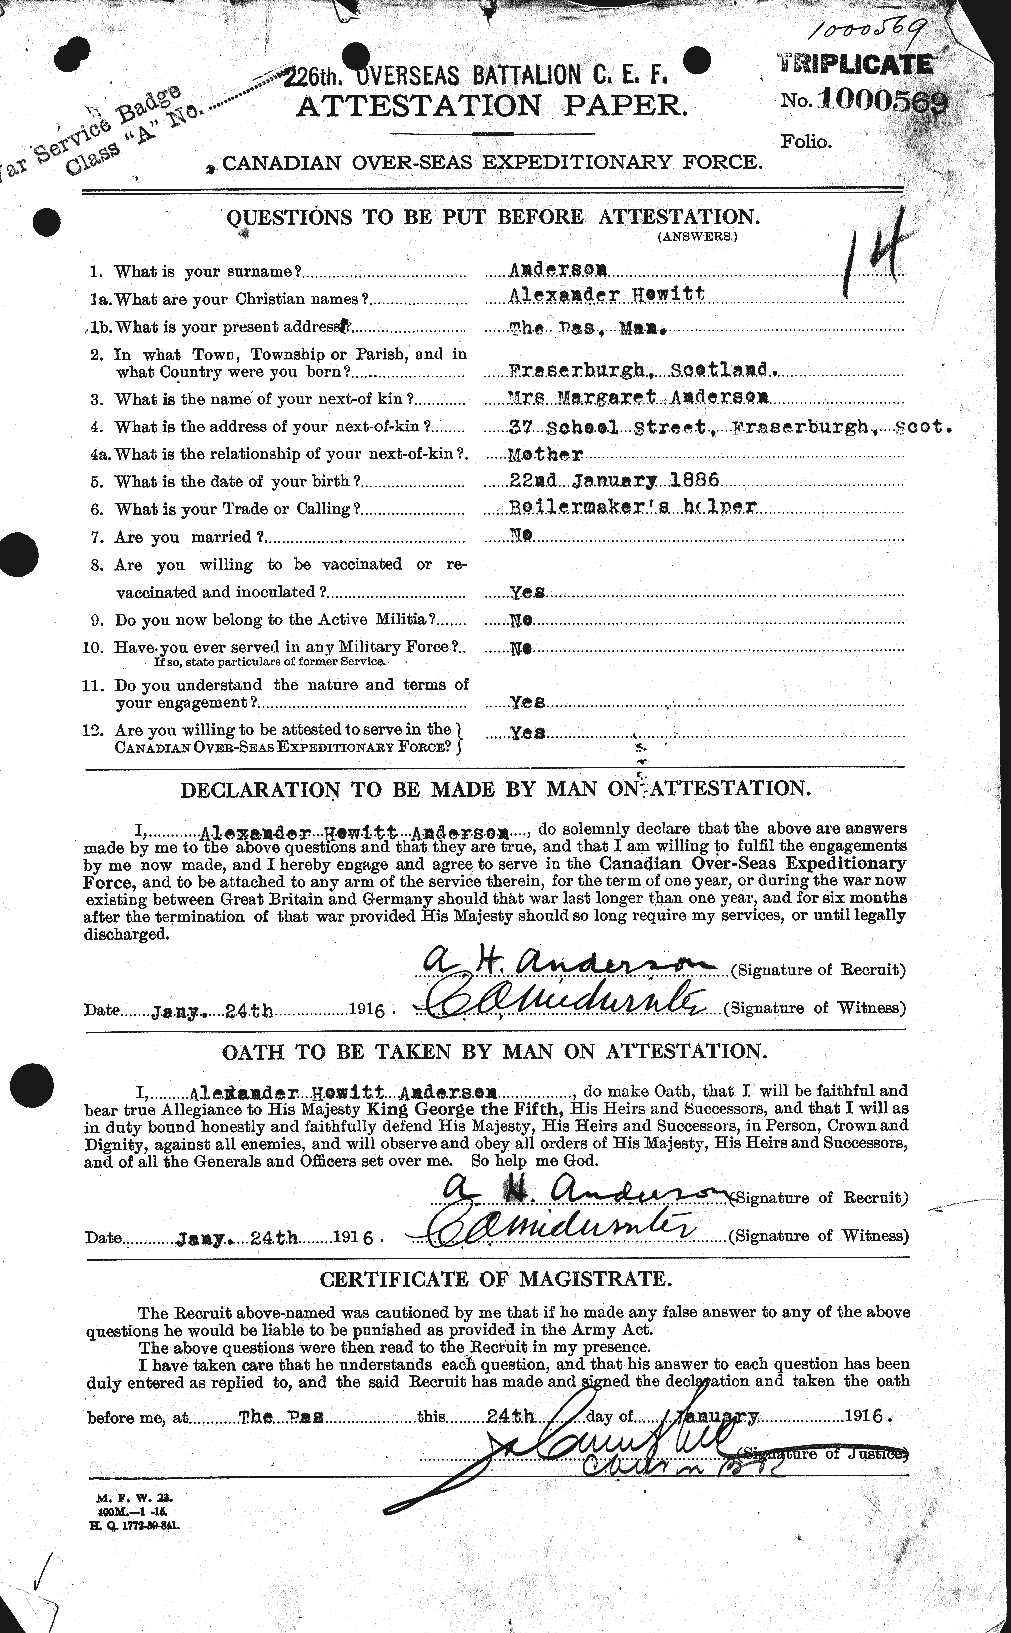 Dossiers du Personnel de la Première Guerre mondiale - CEC 209488a